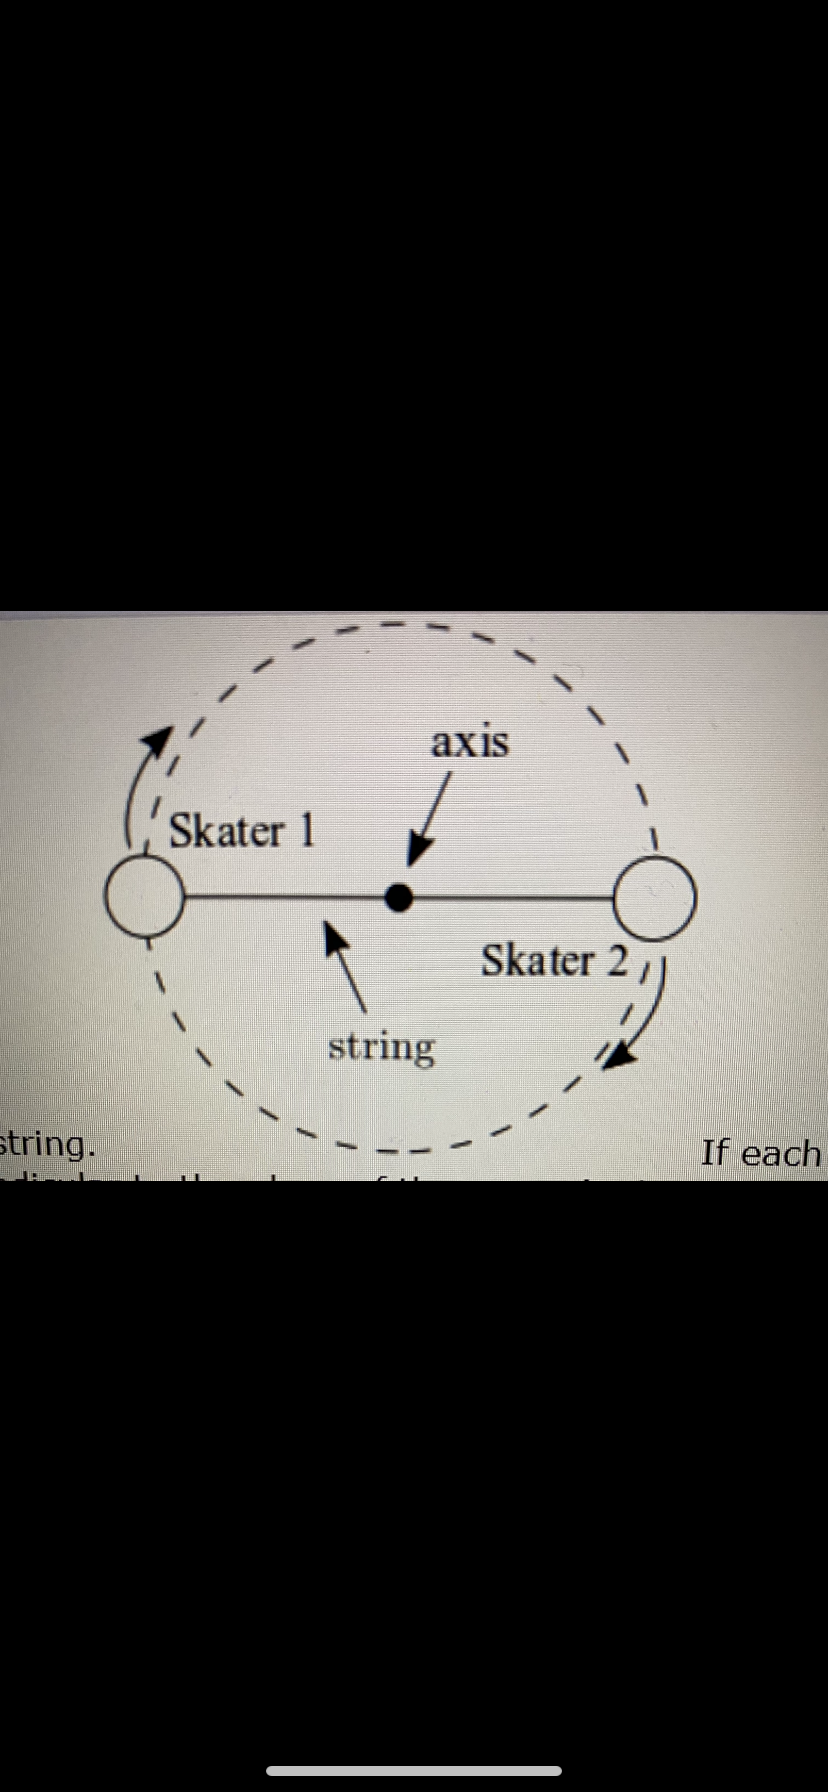 axis
Skater 1
Skater 2
string
string.
If each
